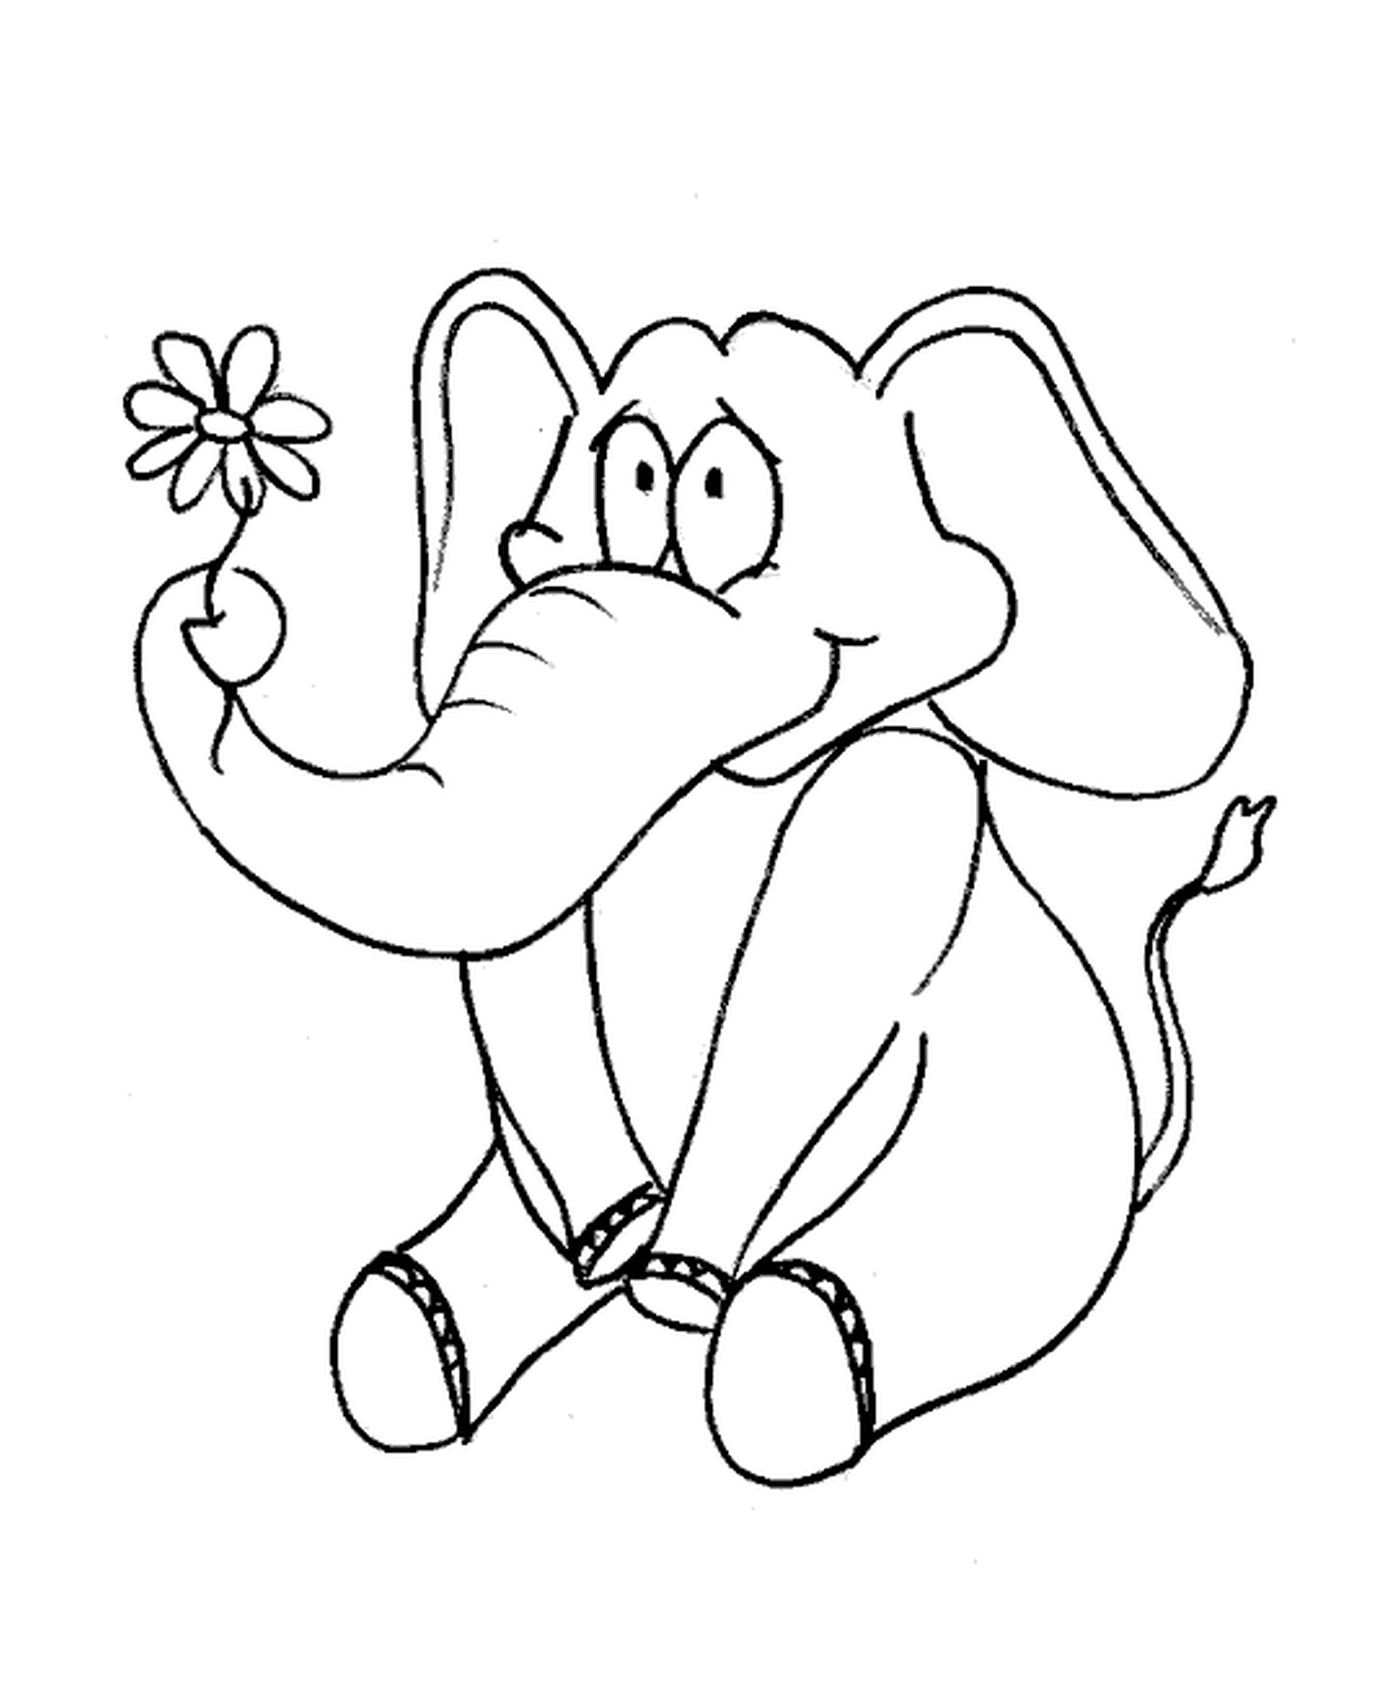  हाथी का फूल 